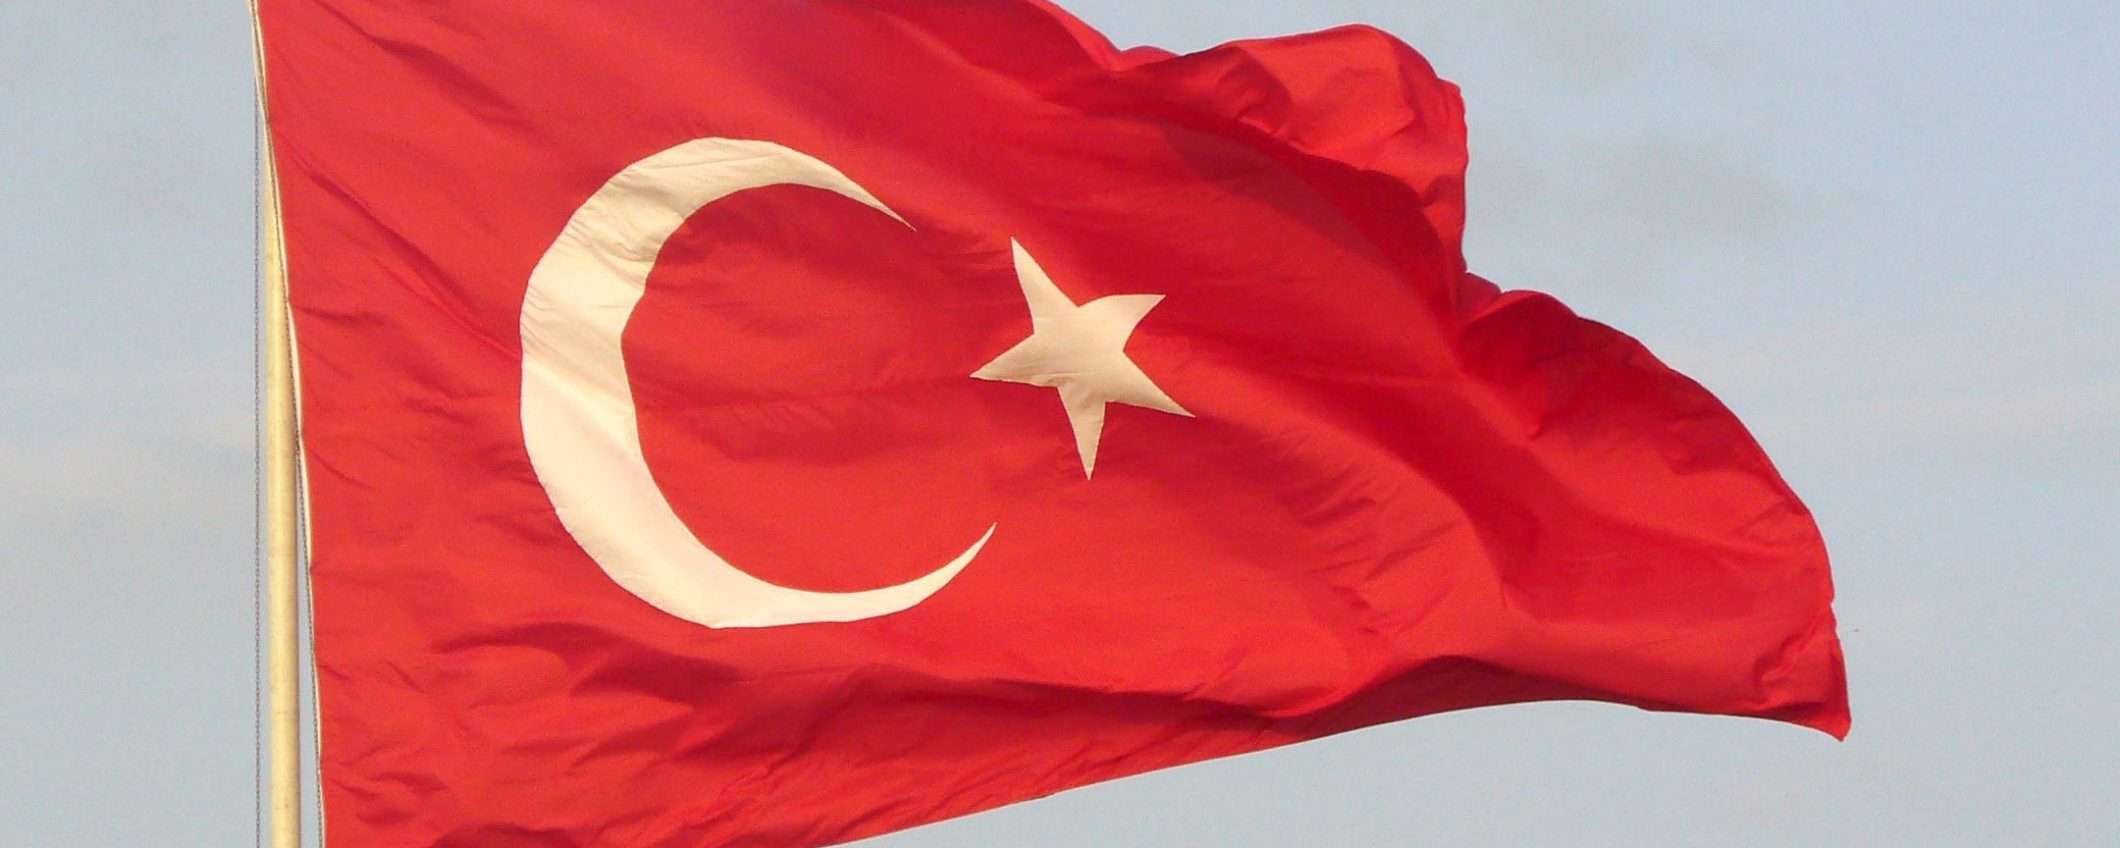 Turchia, cyberattacchi a Europa e Medio Oriente